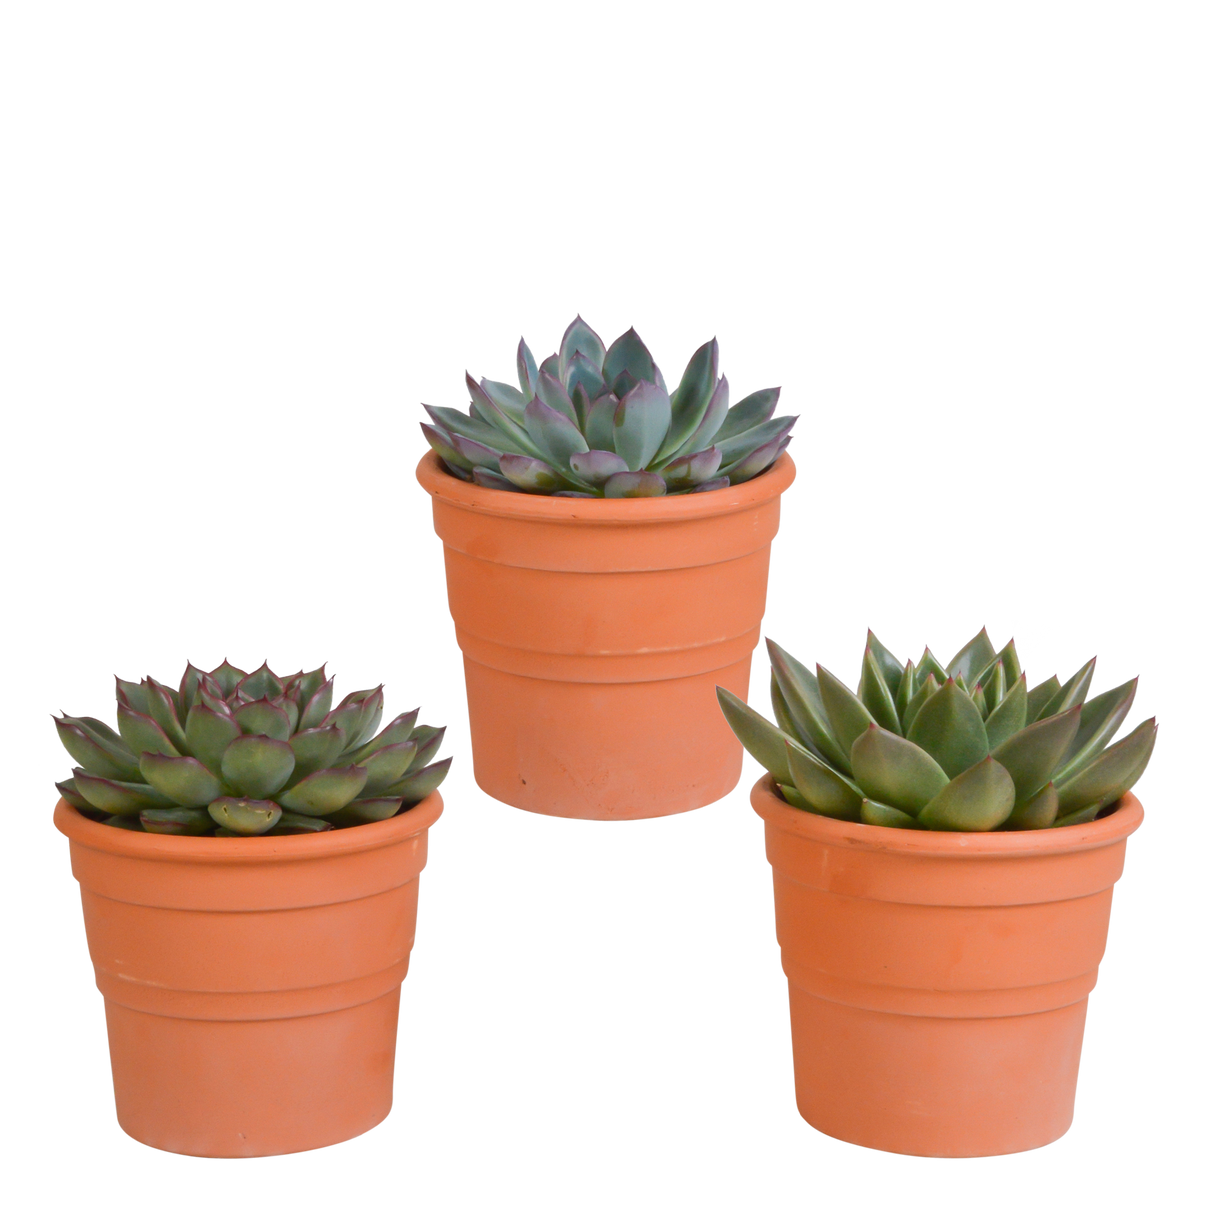 Coffret cadeau echeveria et ses caches-pots terracotta - Lot de 3 plantes, h21cm